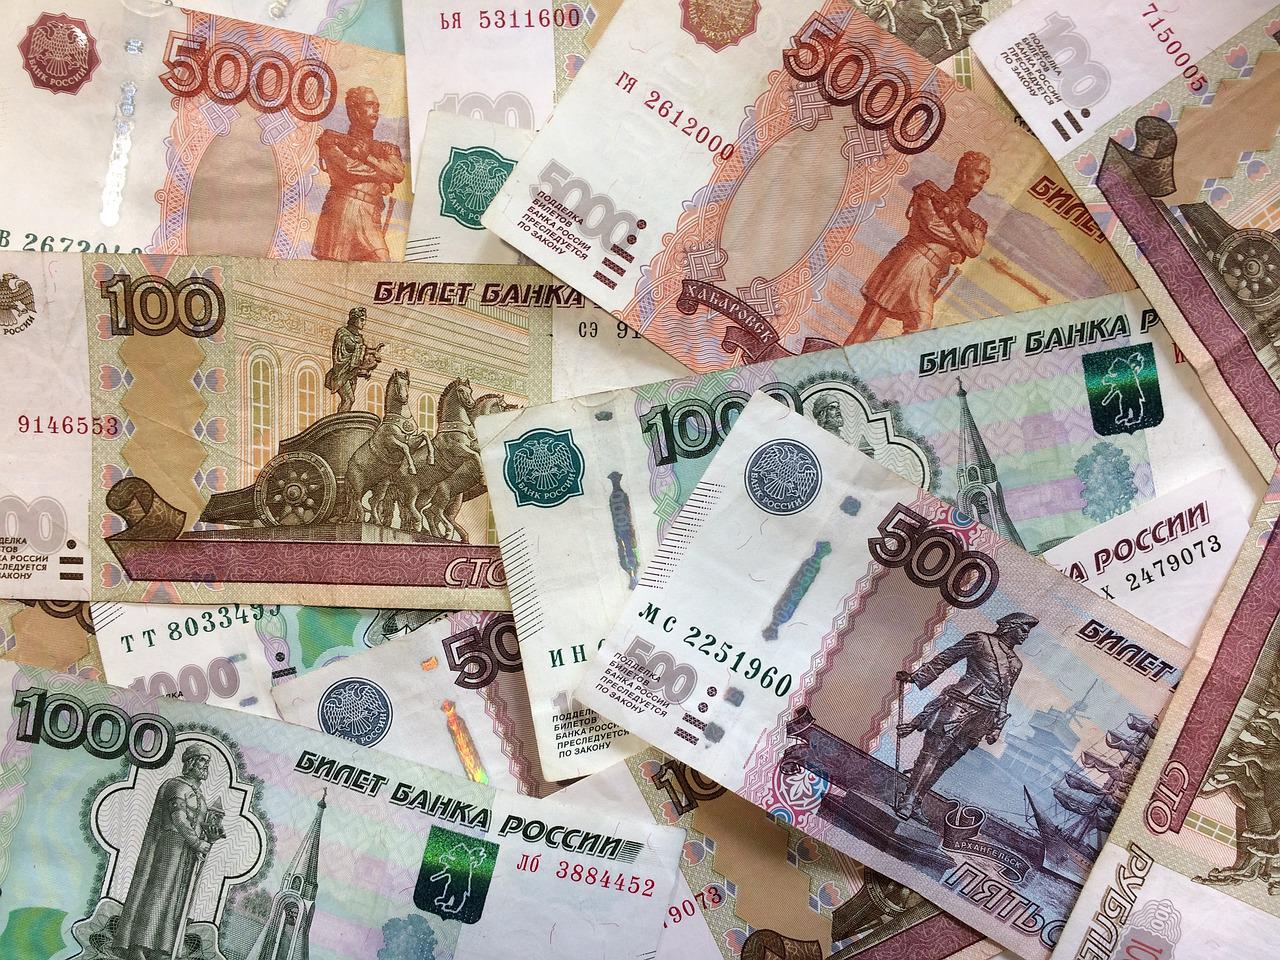 Россиянам срочно зачислят по 10 000 рублей на карту «Мир». Названа дата прихода денег